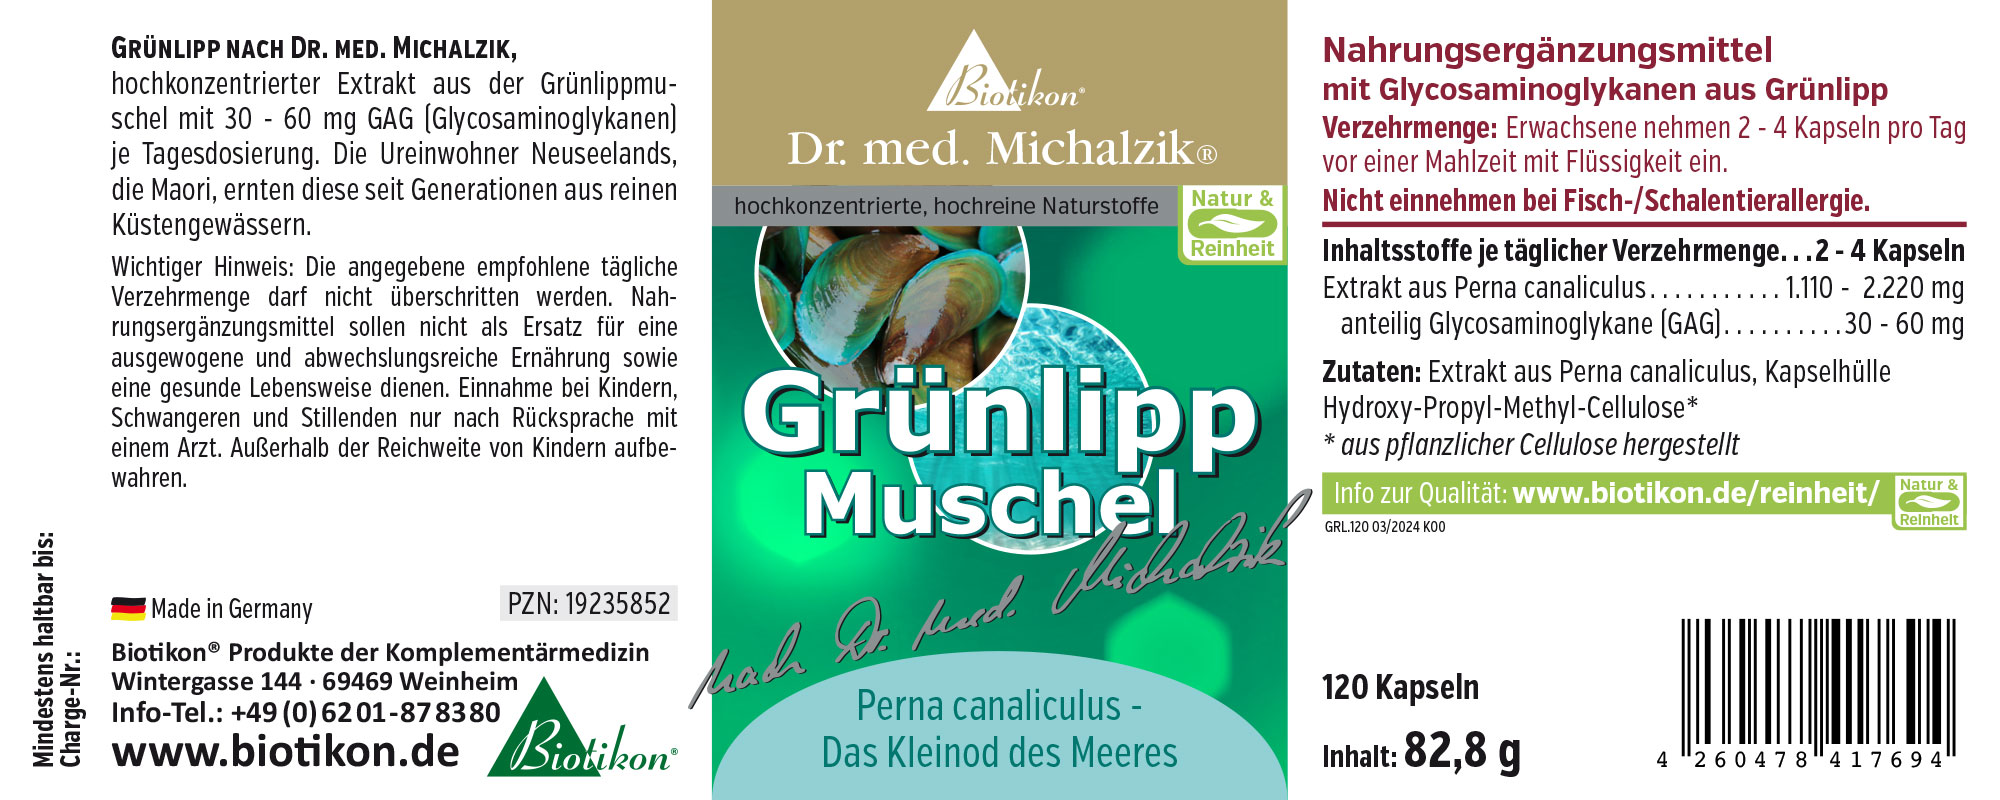 Grünlipp-Muschel